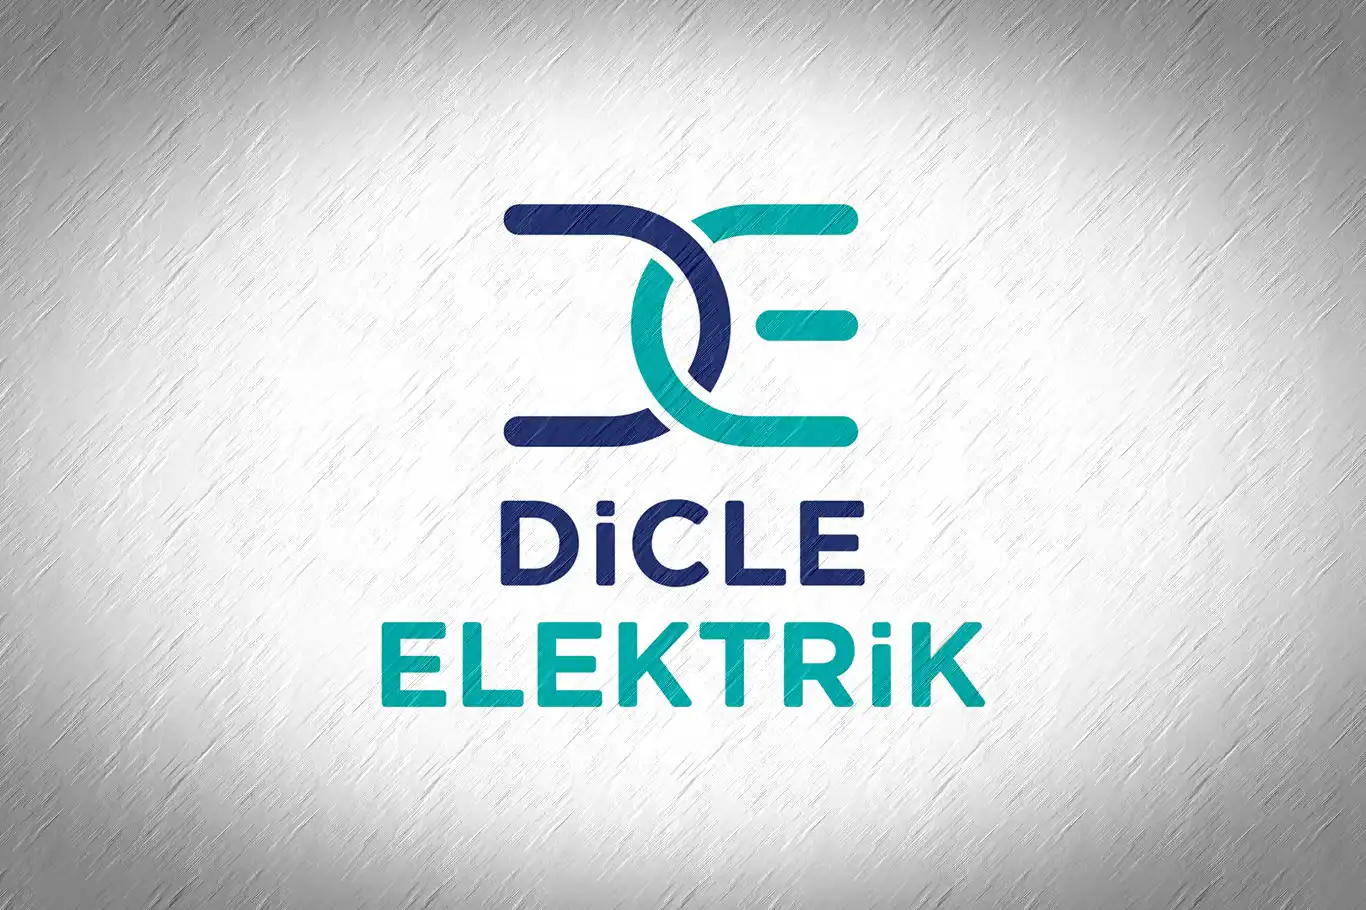 Dicle Elektrik’ten kesintilerin "kasıtlı" olduğu iddiasına açıklama